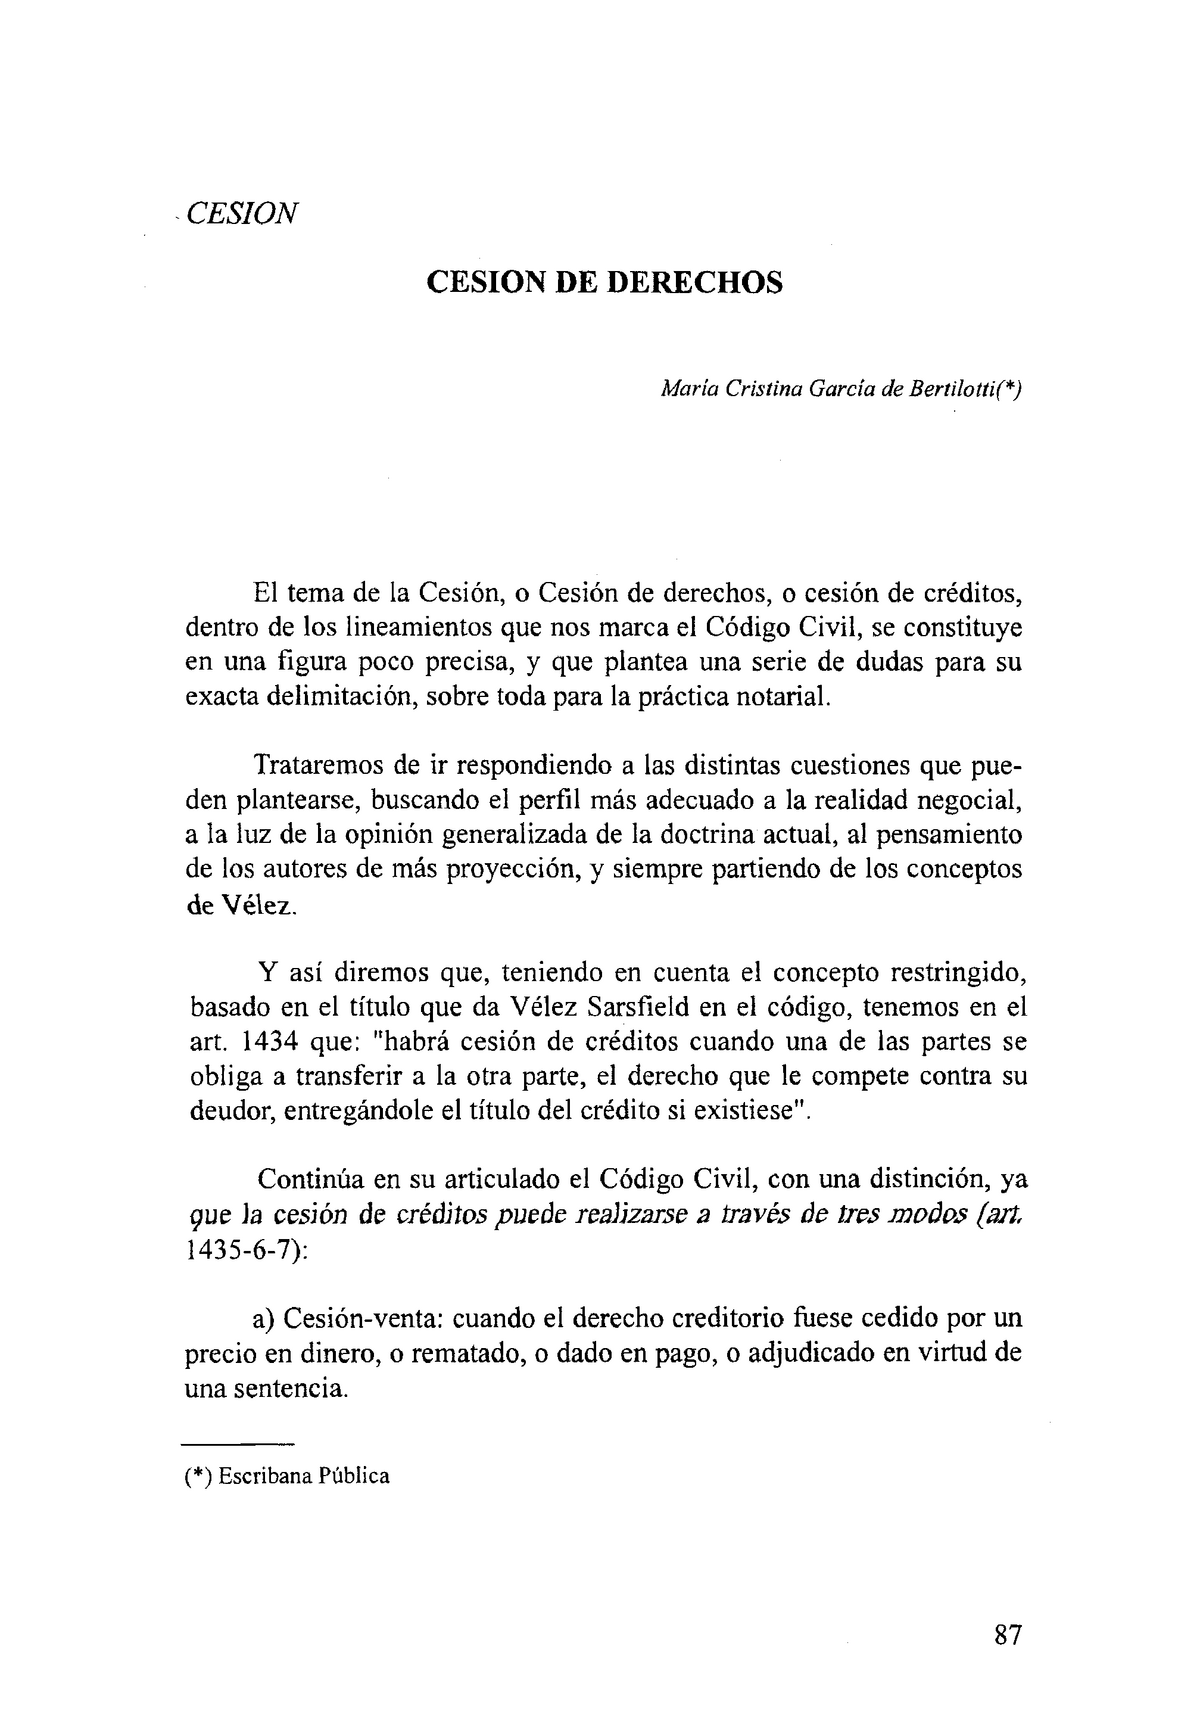 Introduccion a la sesion de derechos PRIVADO III - (*) Escribana Pública a)  Cesión-venta: cuando el - Studocu